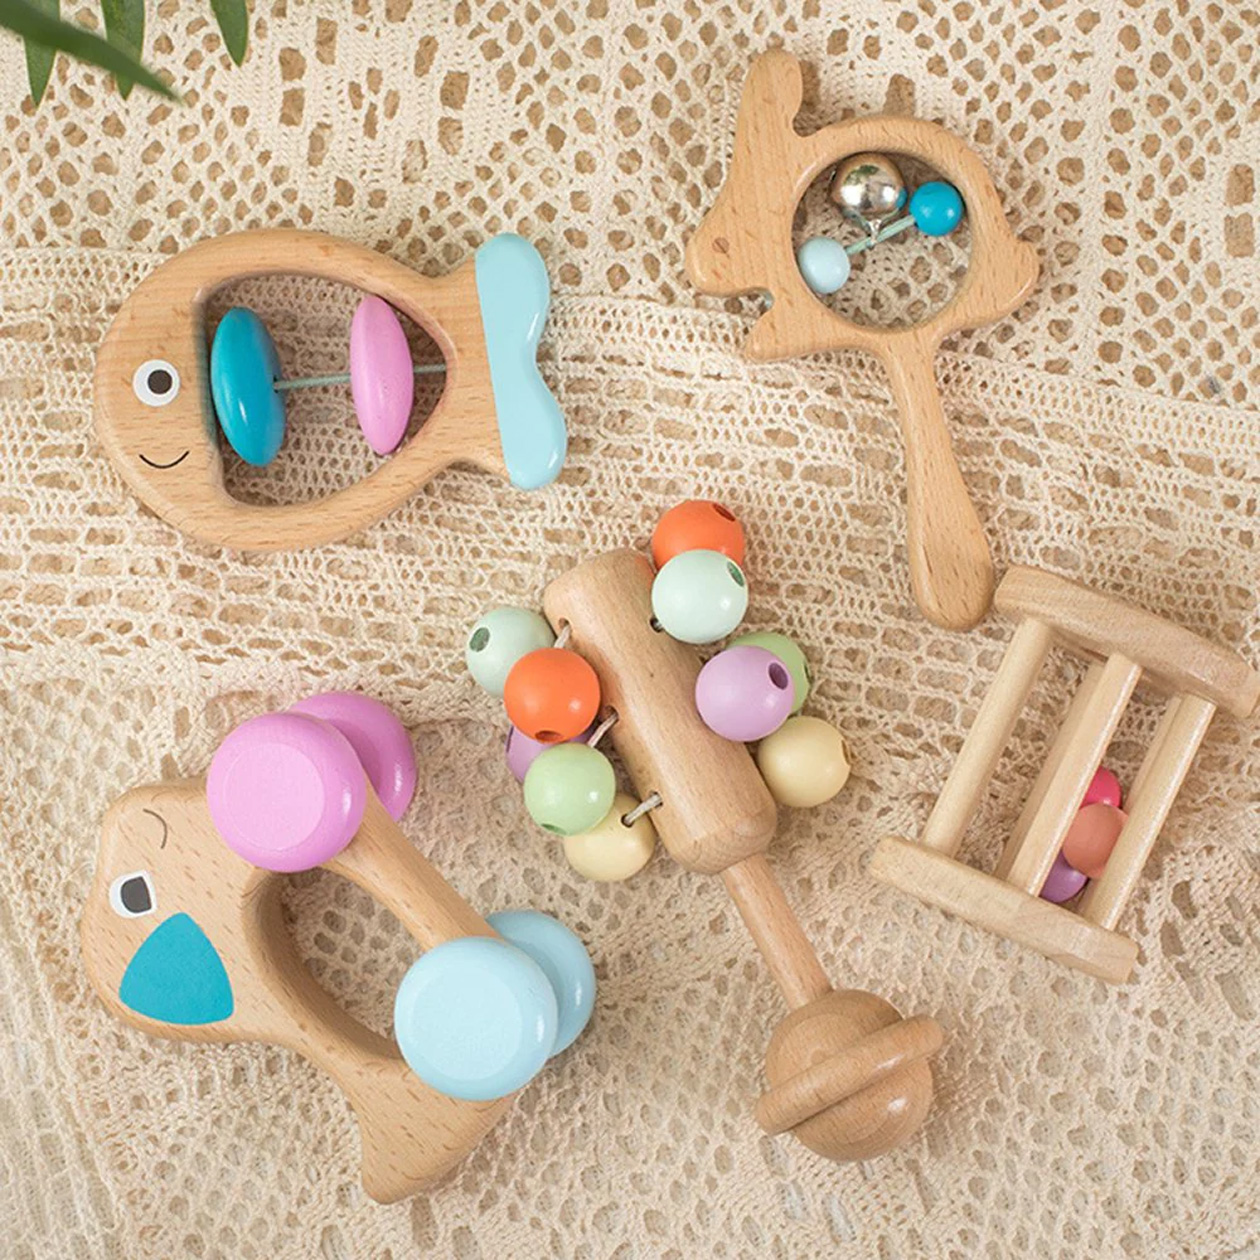 Примеры игрушек для младенцев: набор погремушек из натуральных материалов. Источник: montessorigeneration.com